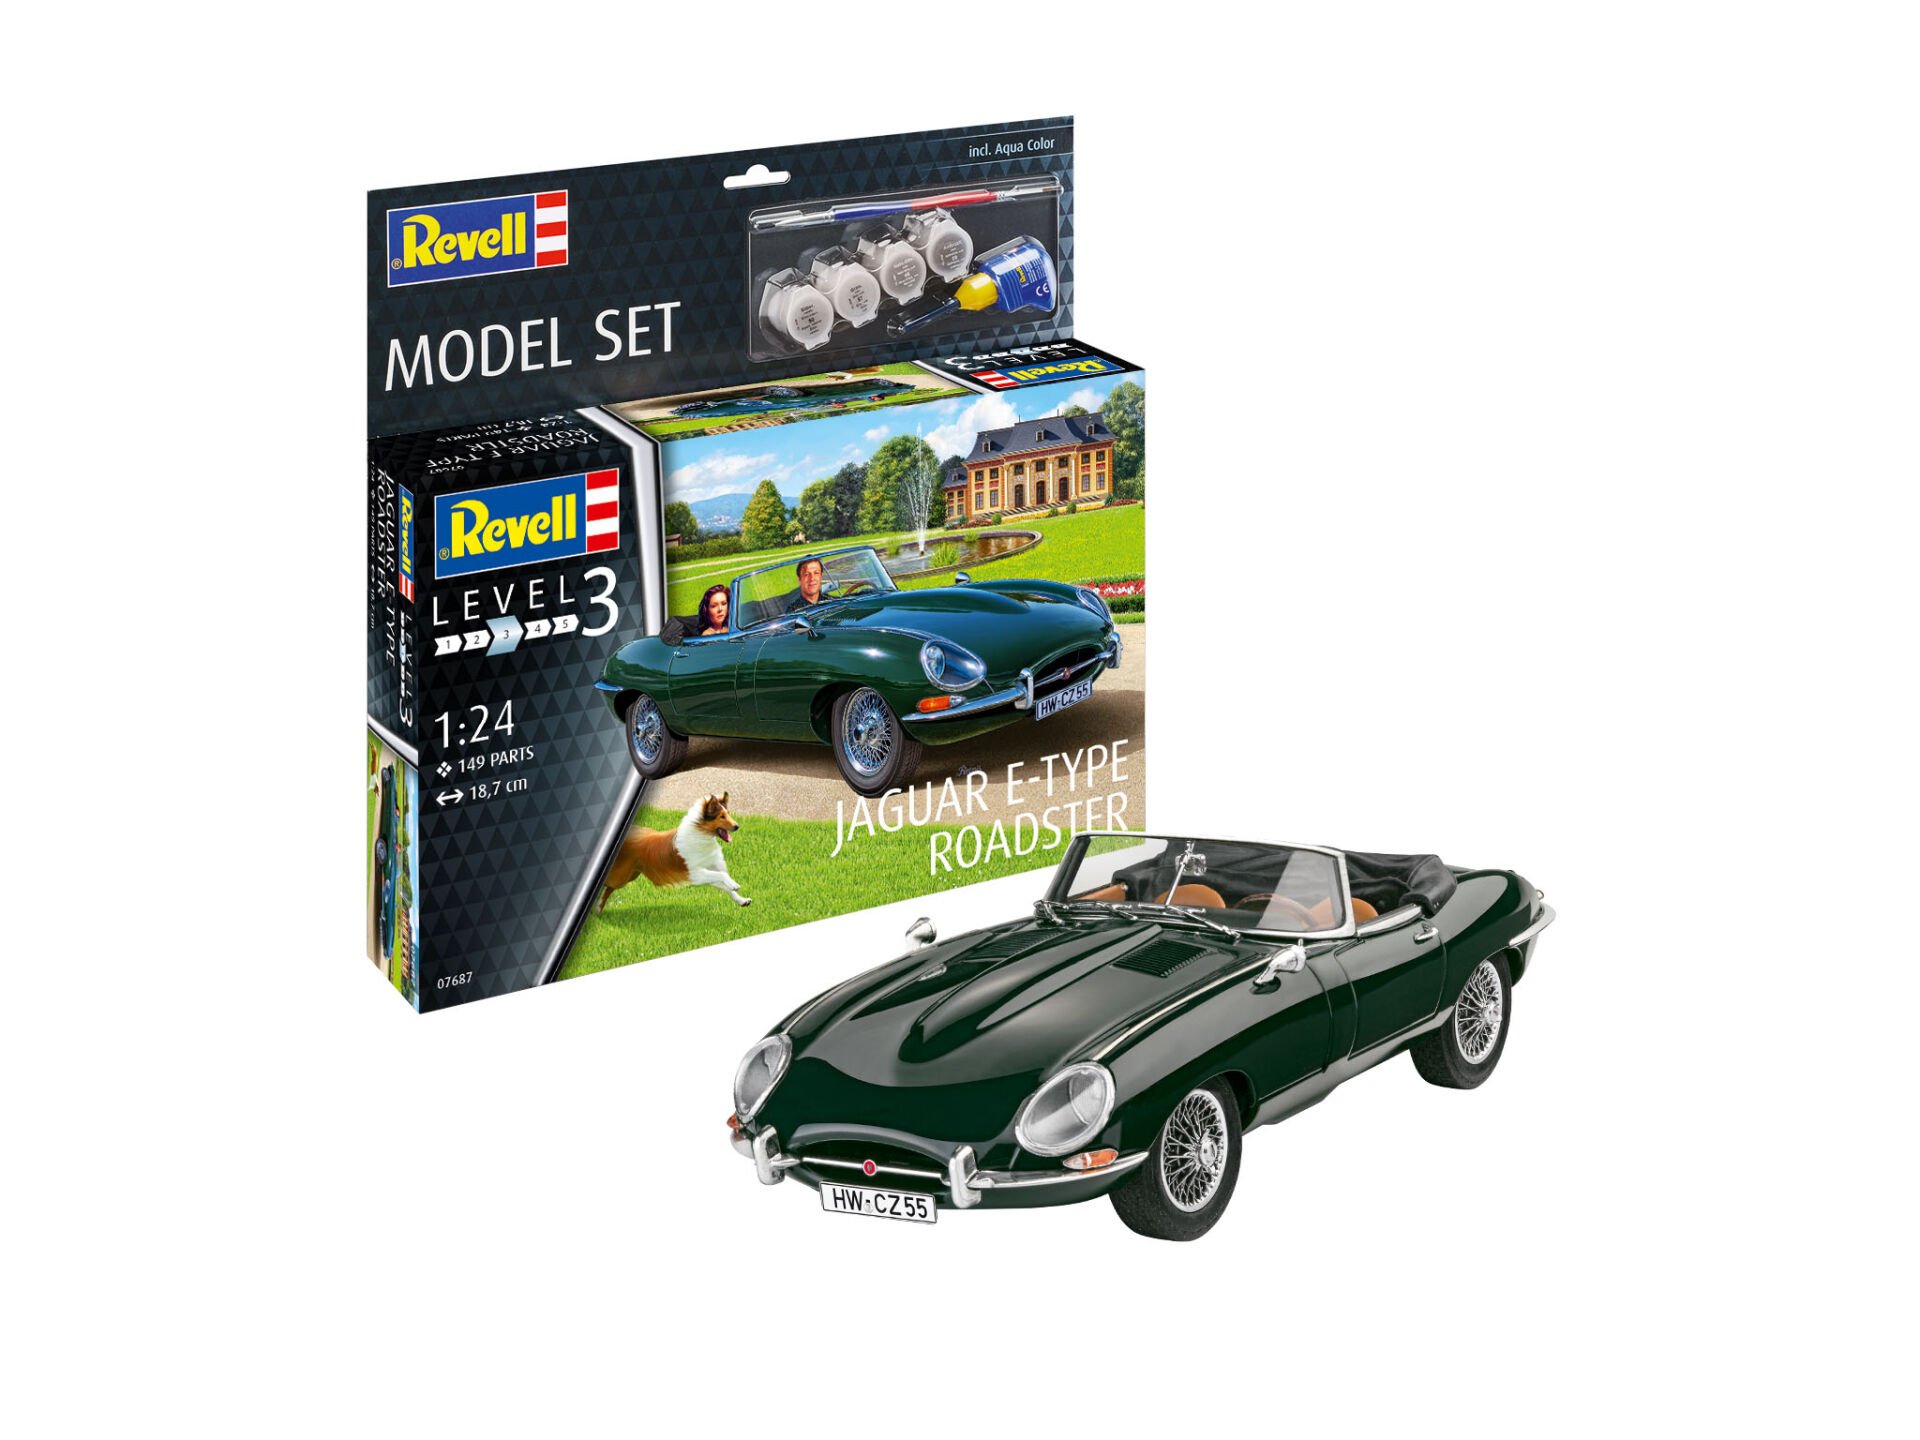 M.Set Jaguar E Type Roadster